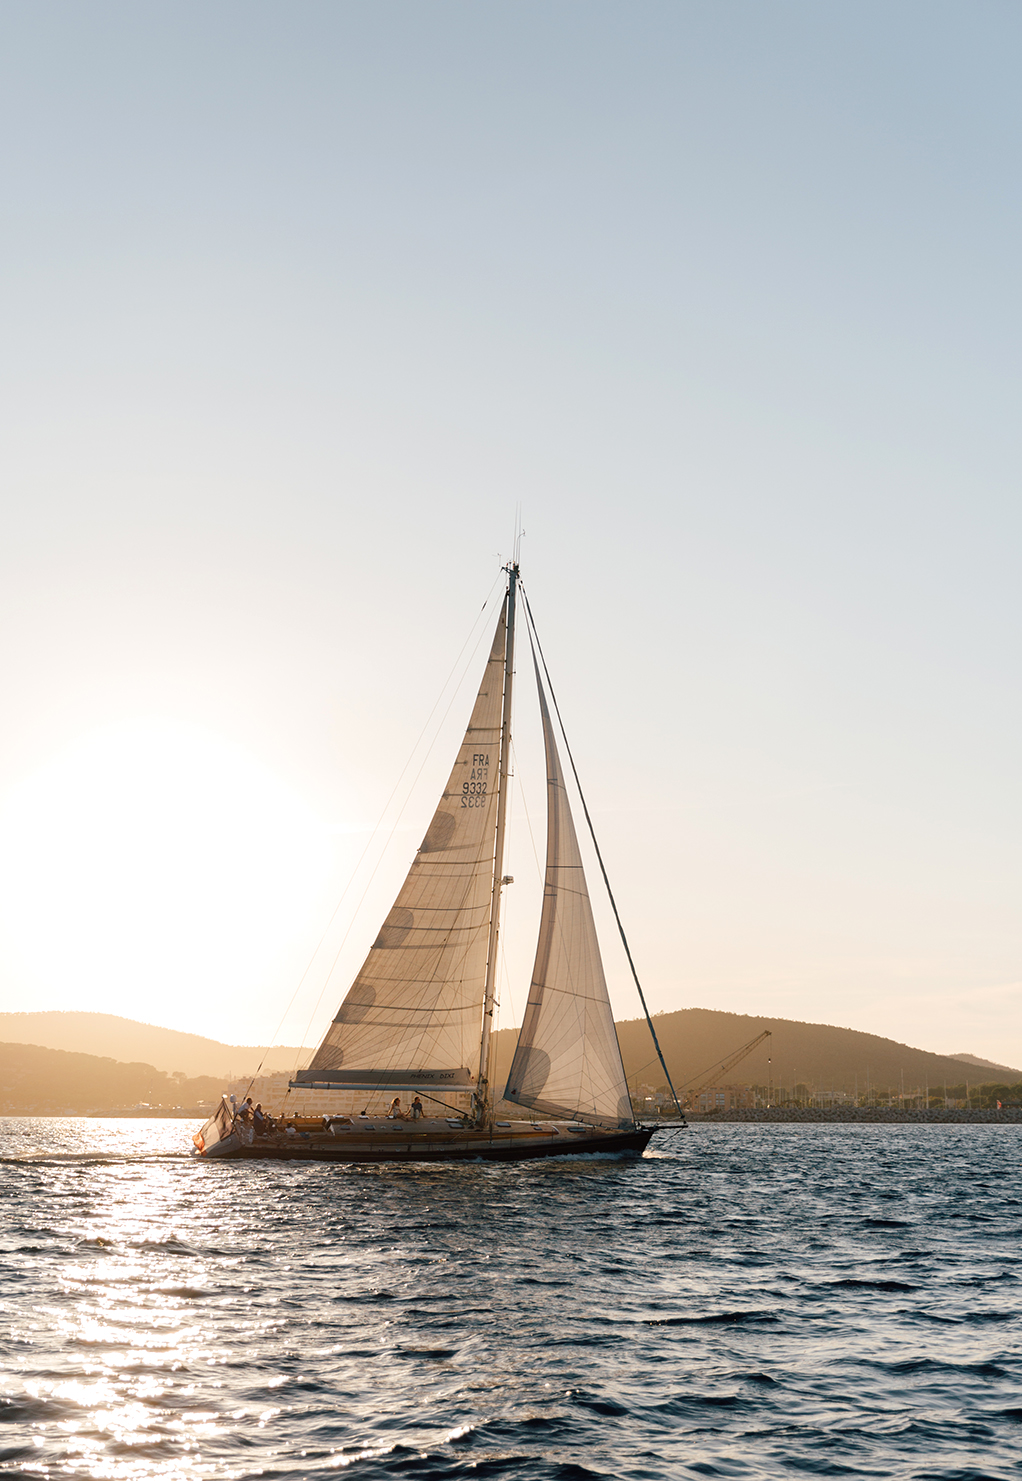 Set yours sails for Les Voiles de Saint Tropez